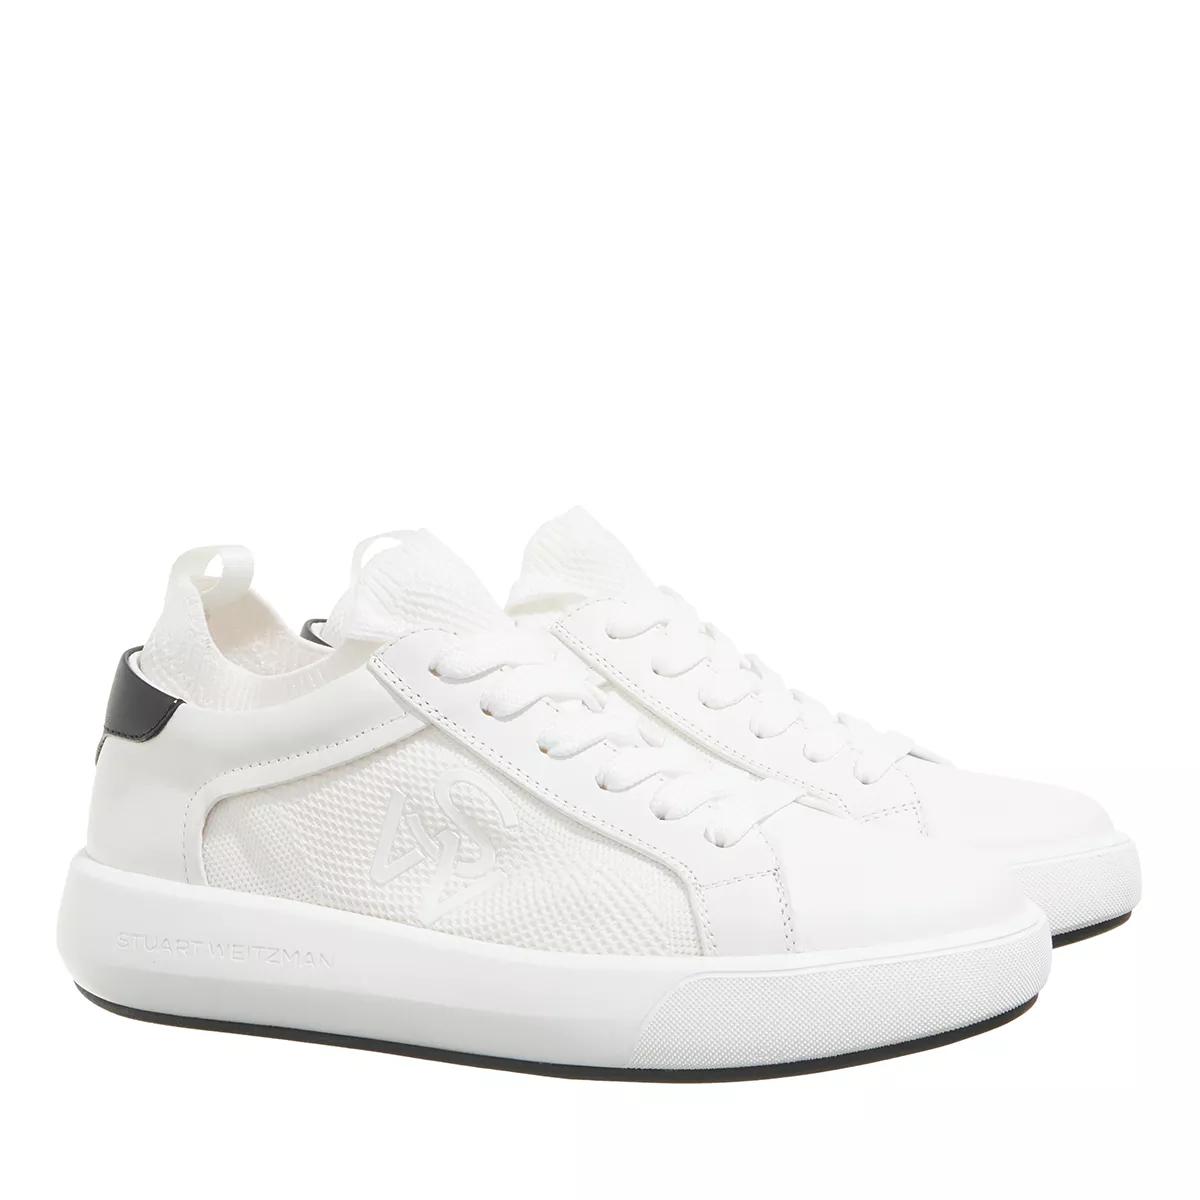 Stuart Weitzman Sneakers - 5050 PRO - Gr. 38 (EU) - in Weiß - für Damen von Stuart Weitzman